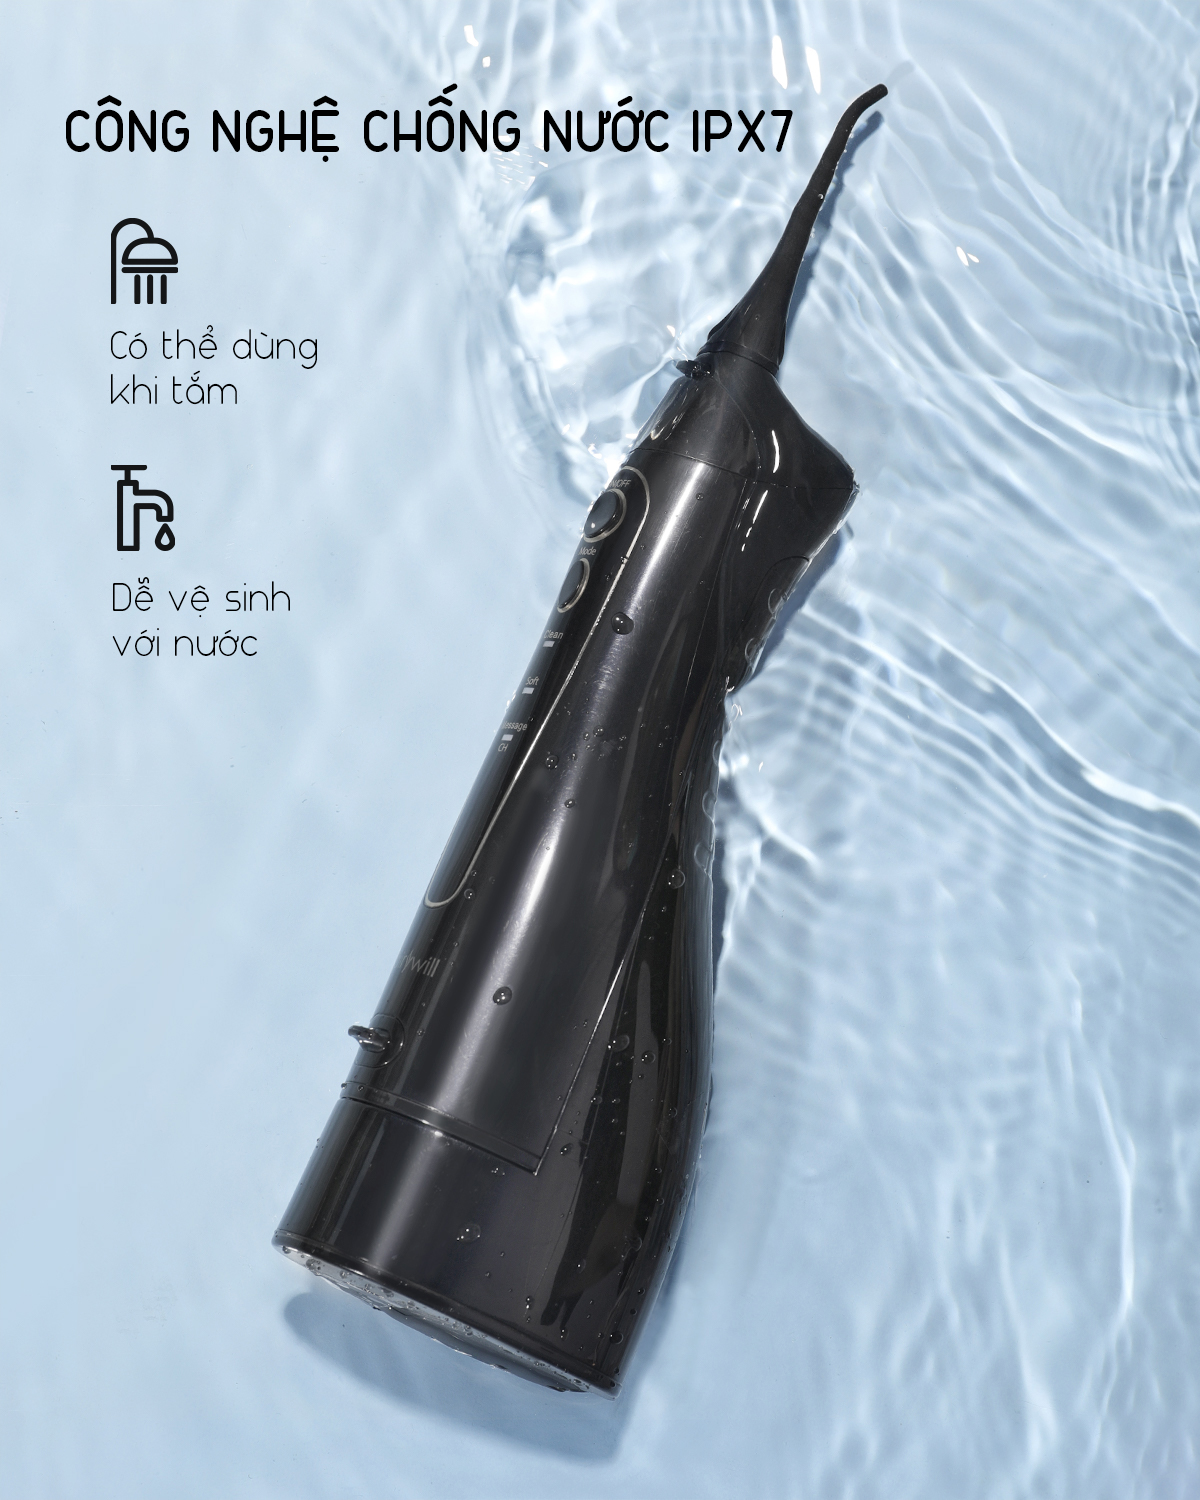 Máy tăm nước cầm tay FAIRYWILL FW-5020E máy tăm nước chính hãng Mỹ vệ sinh răng miệng cao cấp Thiết kế nhỏ gọn Sạc bằng USB Dễ mang đi du lịch Hàng Chính Hãng